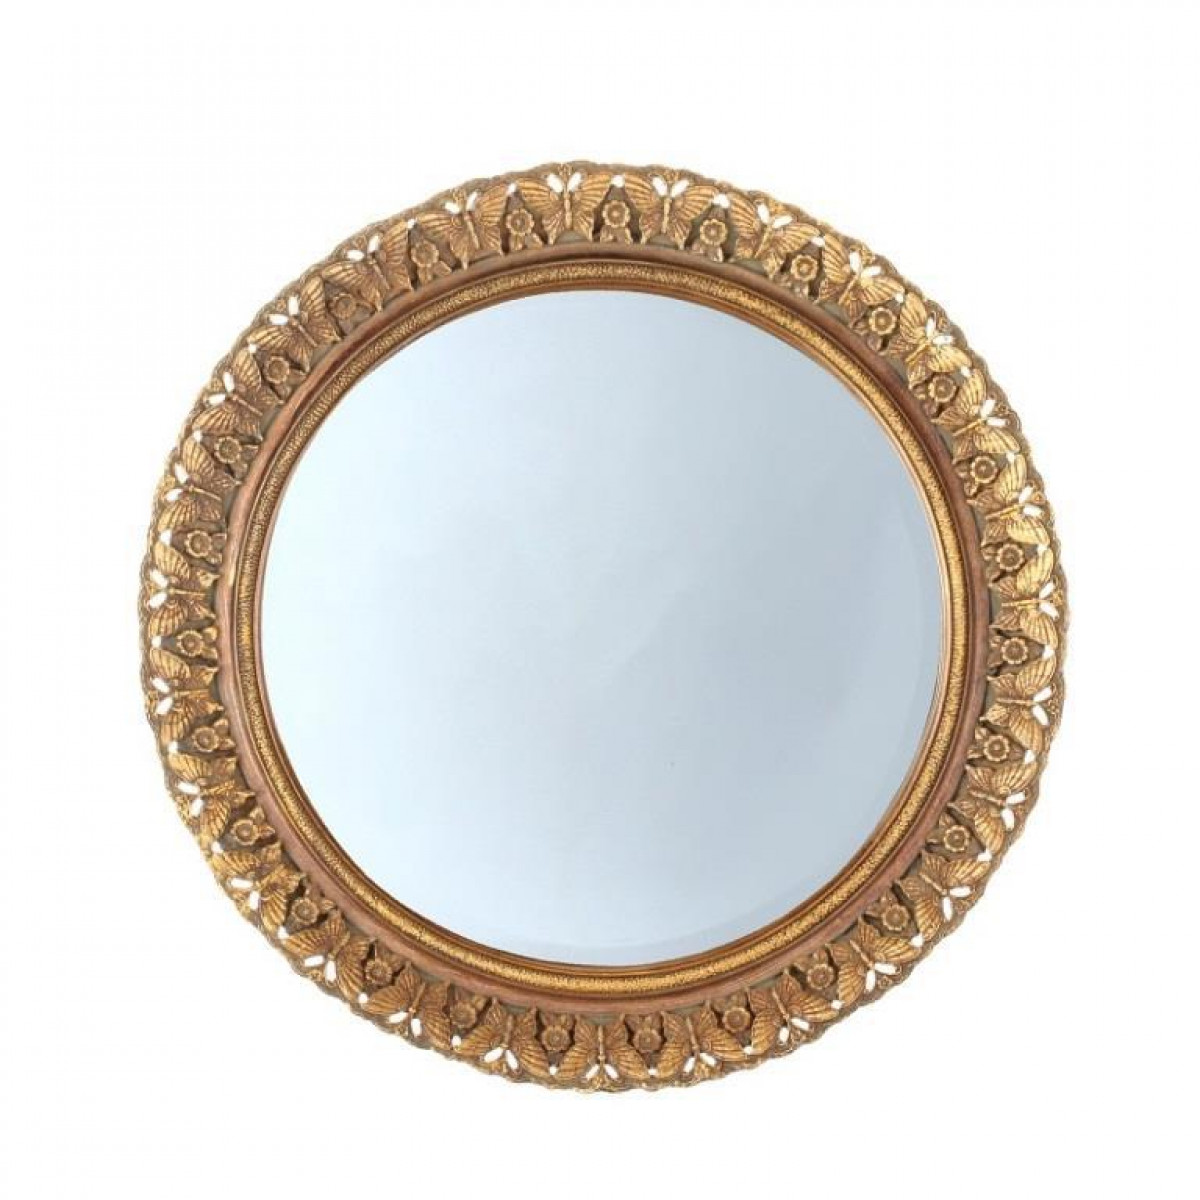 Купить зеркало настенное в спб. Зеркало в раме. Зеркало круглое настенное. Зеркало в золотой раме. Обрамление круглого зеркала.